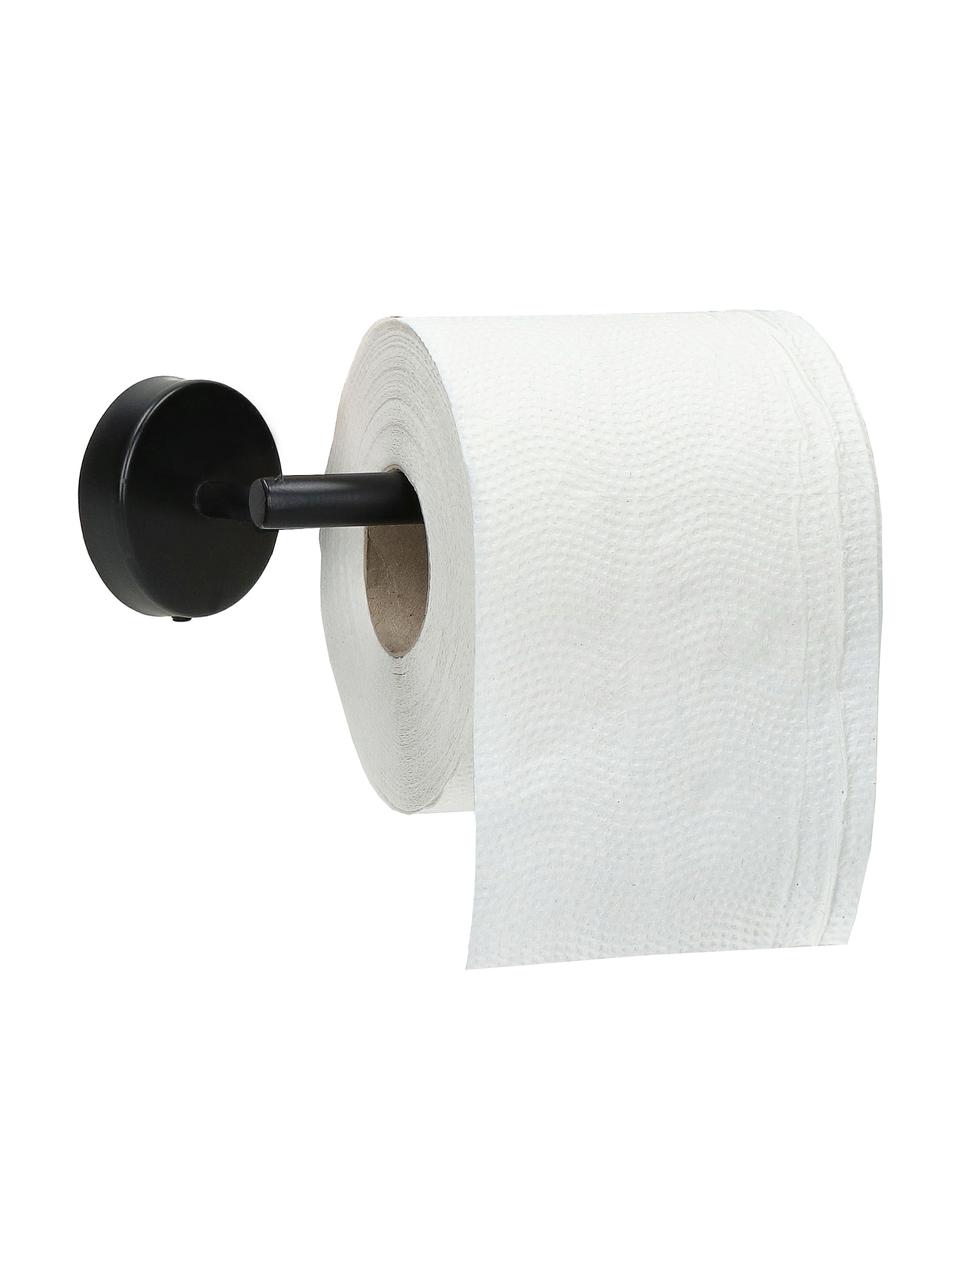 Toilettenpapierhalter Fritz aus Metall in Schwarz, Metall, beschichtet, Schwarz, B 15 x H 5 cm